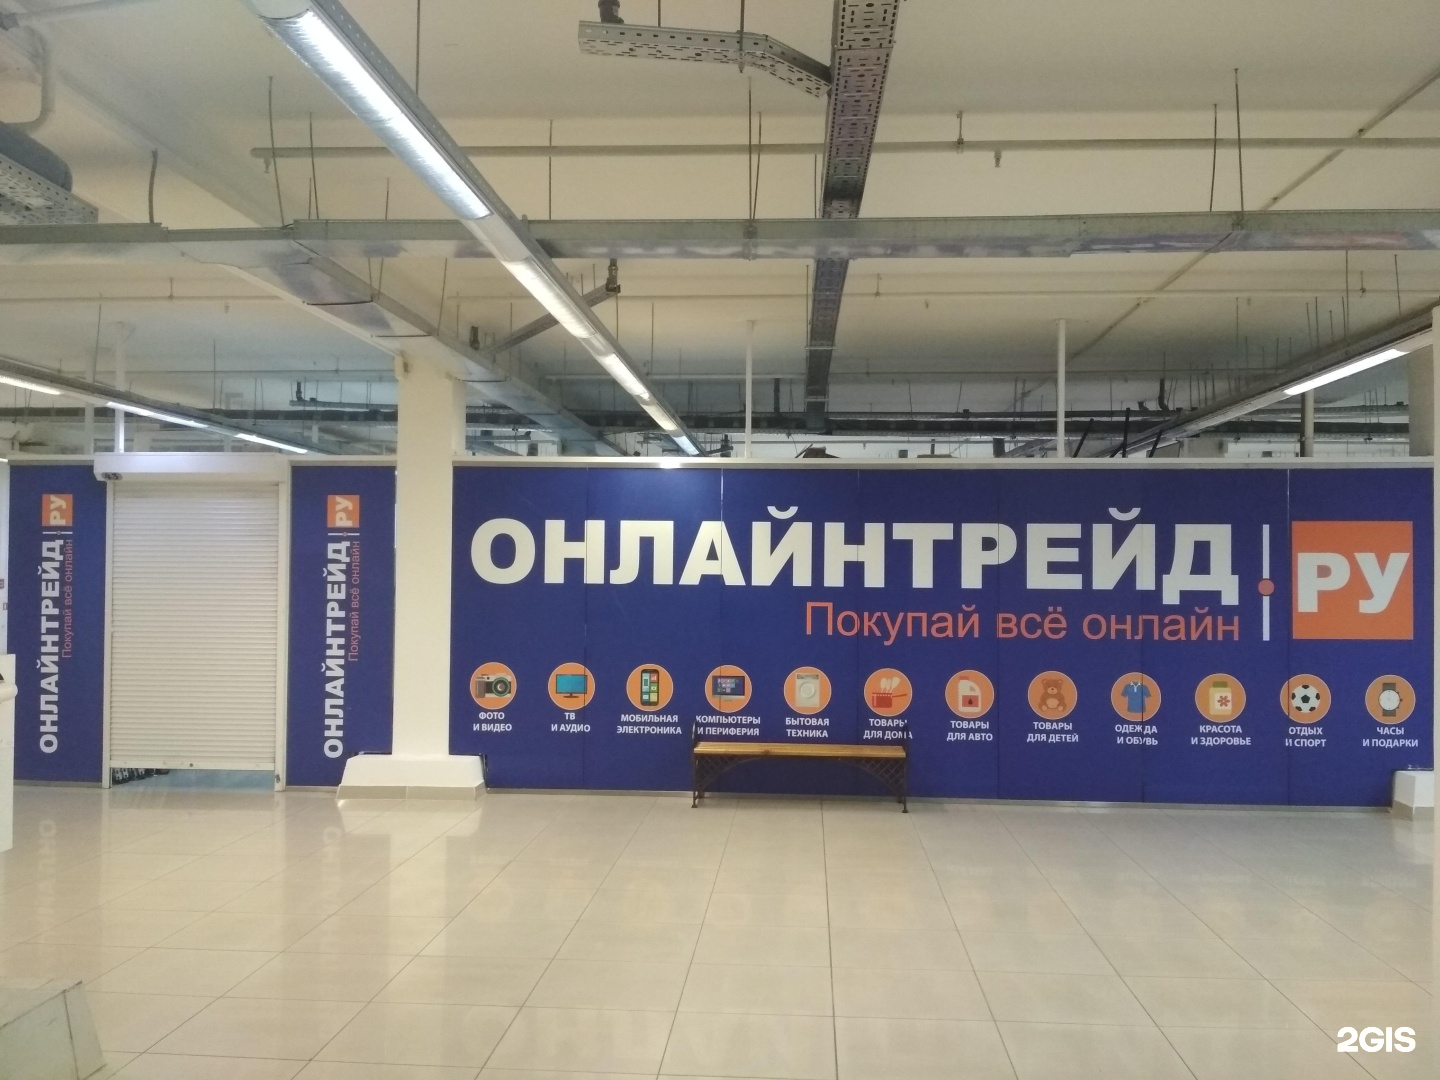 Трейд Магазин Интернет В Челябинске